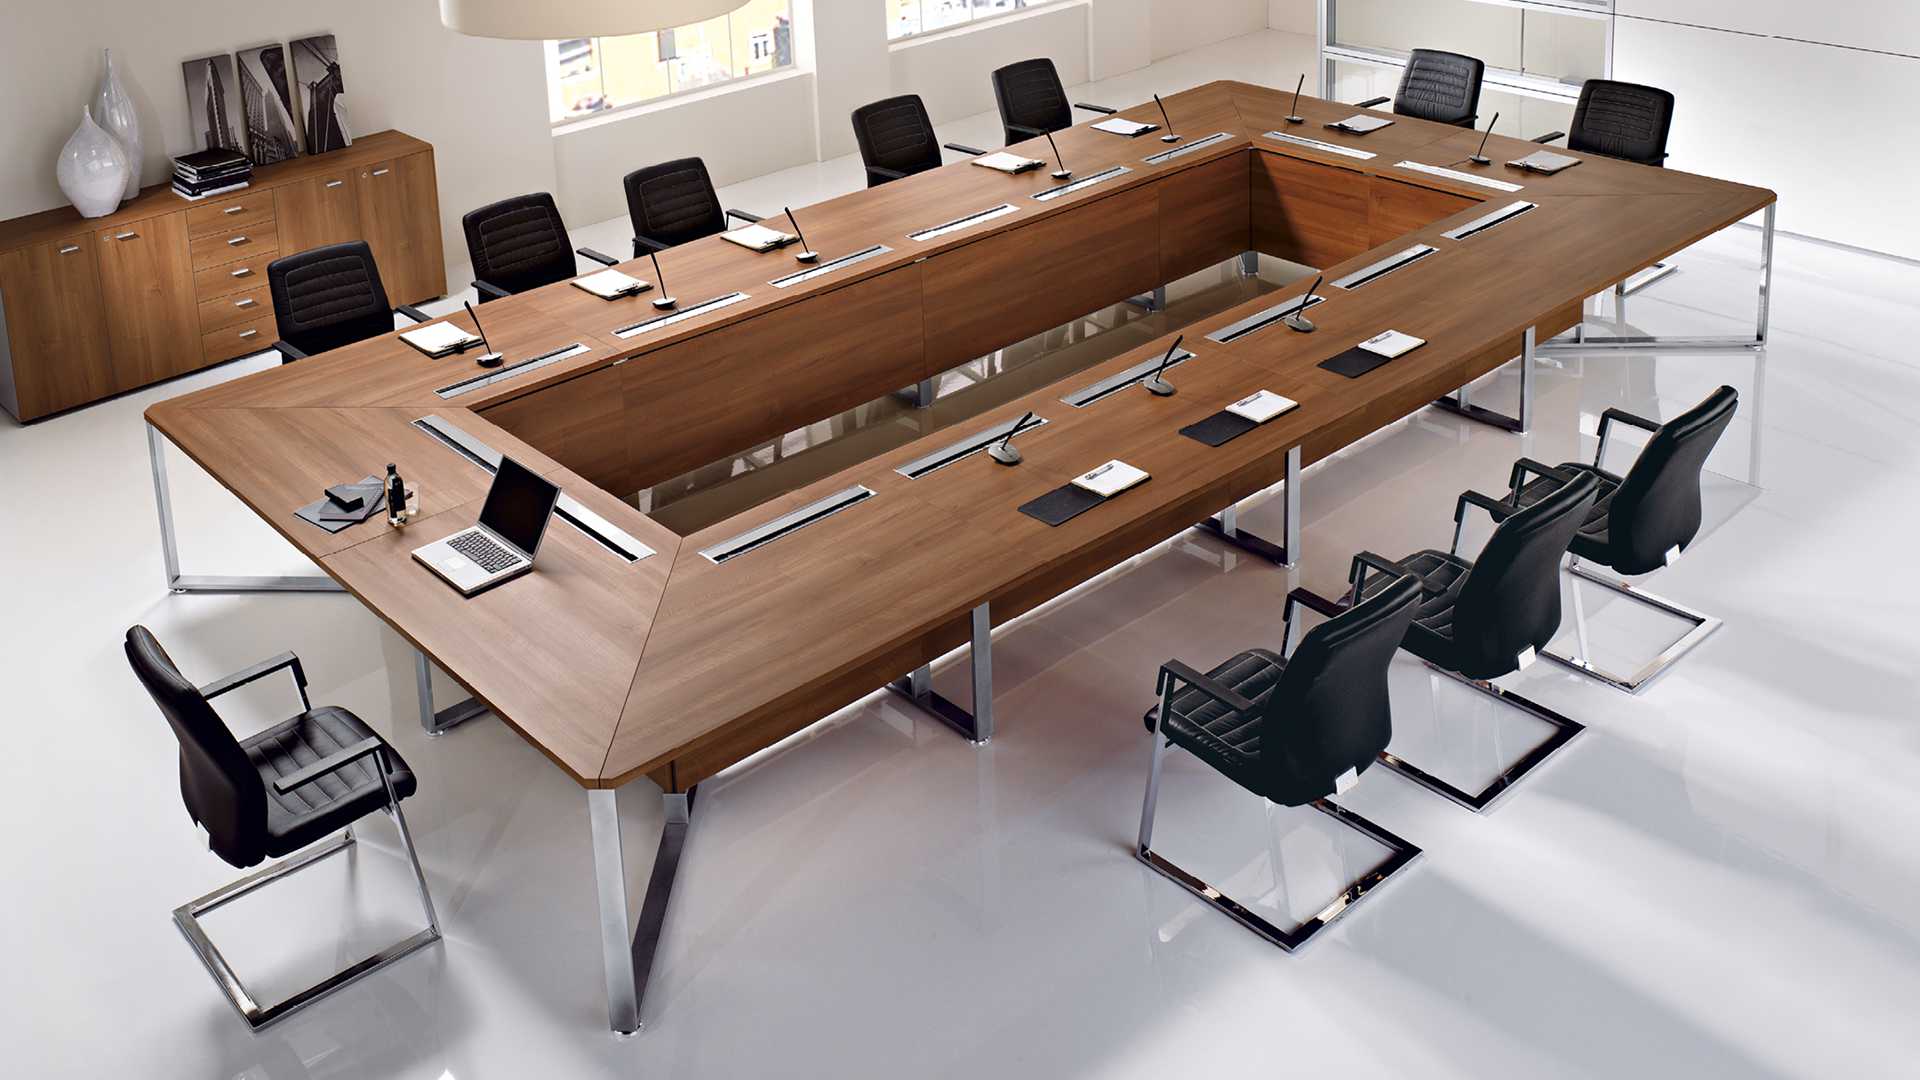 Круглый стол для переговоров на 12 человек